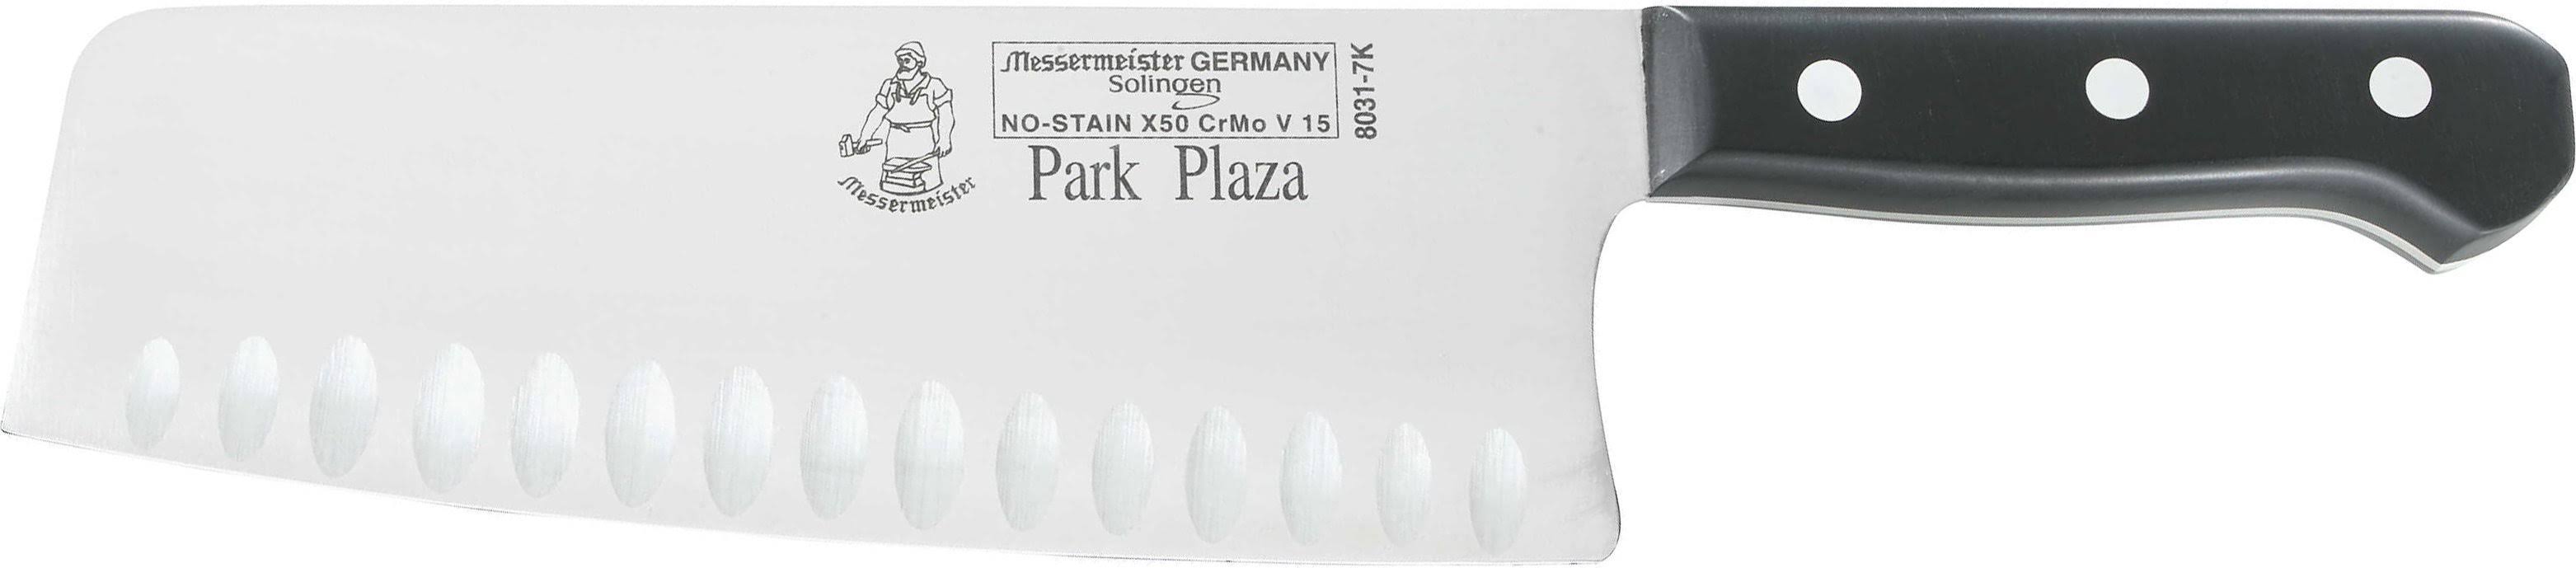 Messermeister - Park Plaza 7" Kullenschliff Vegetable Knife - 8031-7K